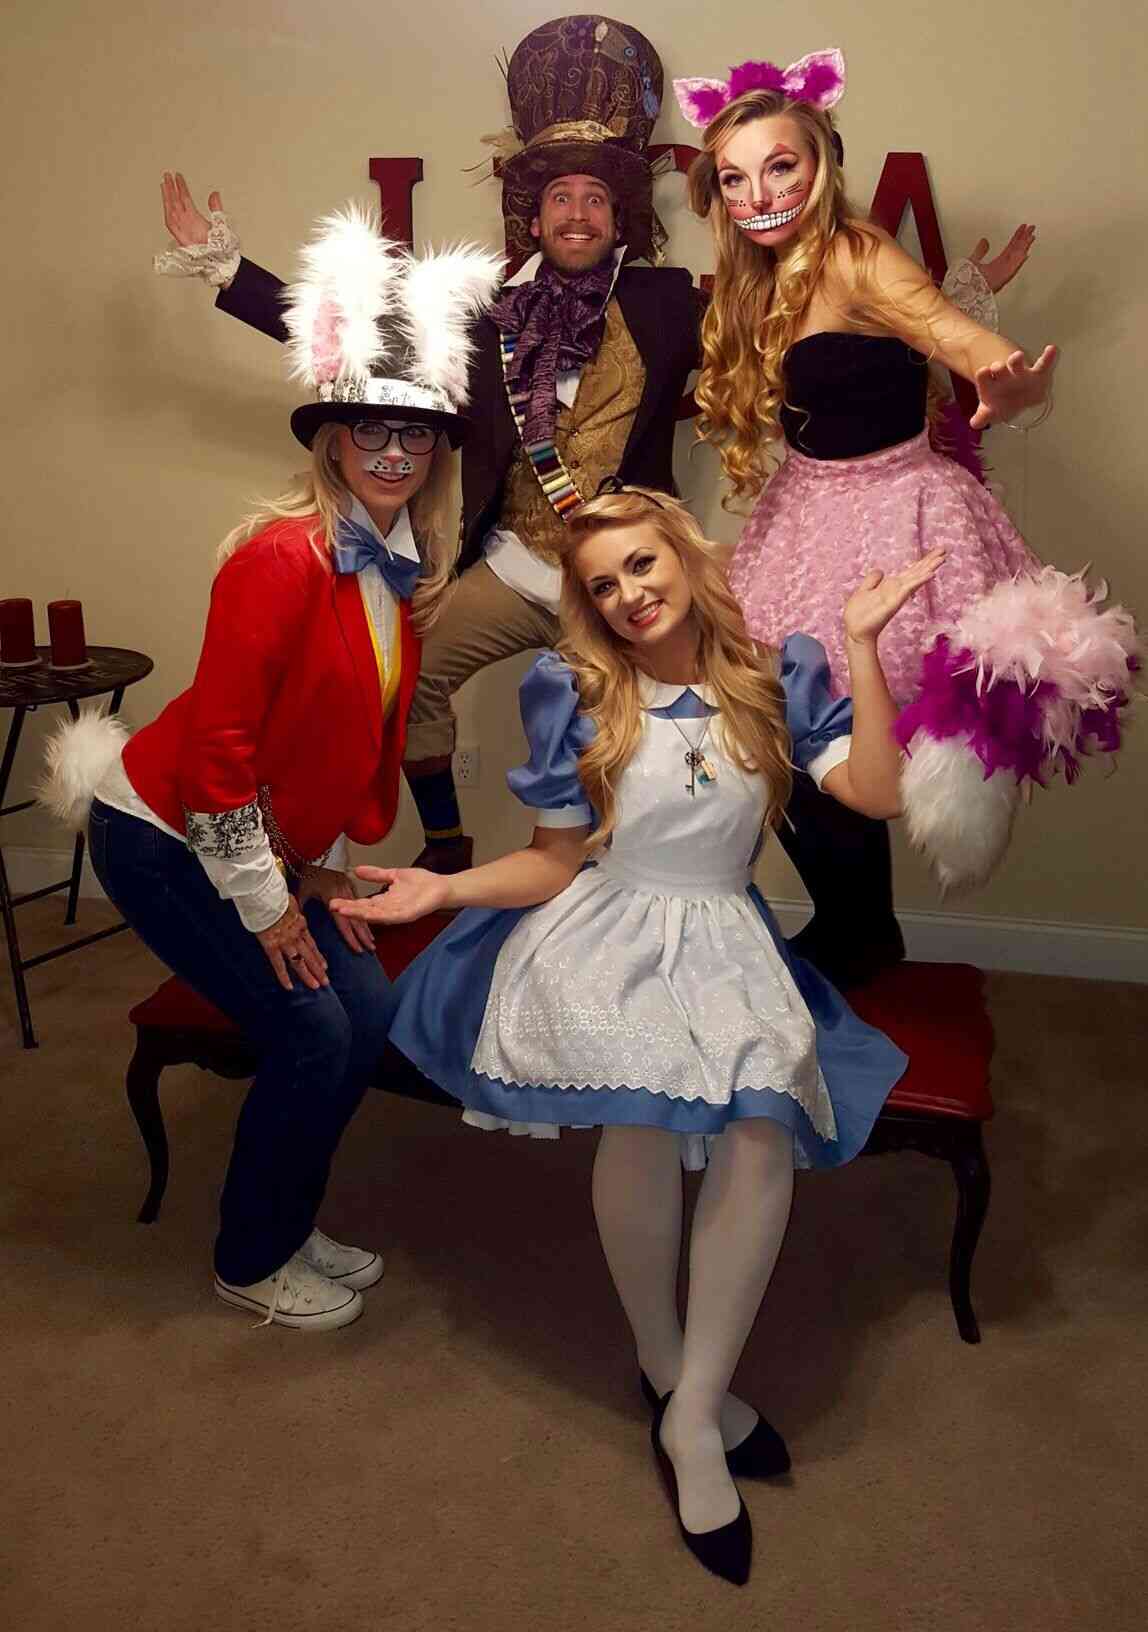 Kostüm für 4 Personen der Zauberer von Oz Kostümideen